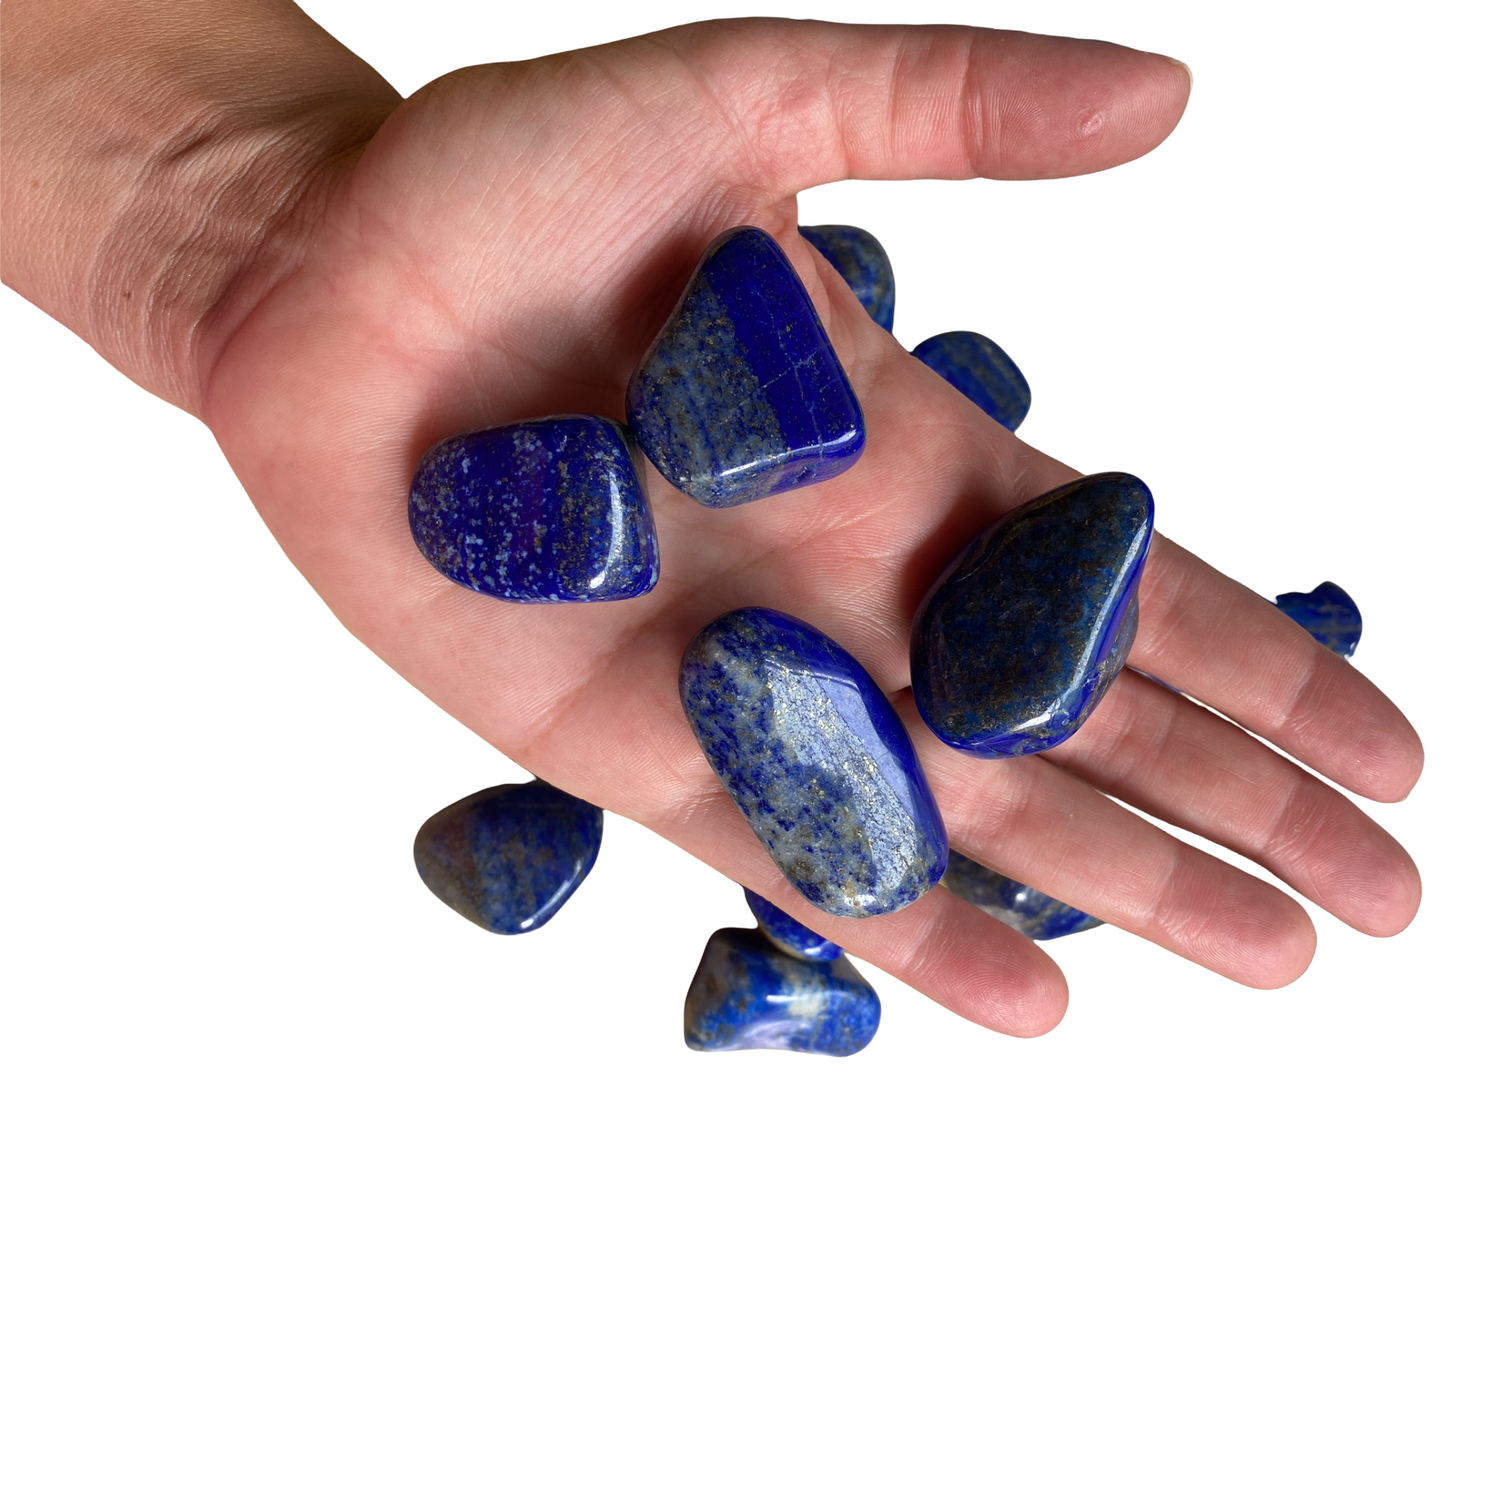 Lapis Lazuli Tumble Stone - Crystal Geological